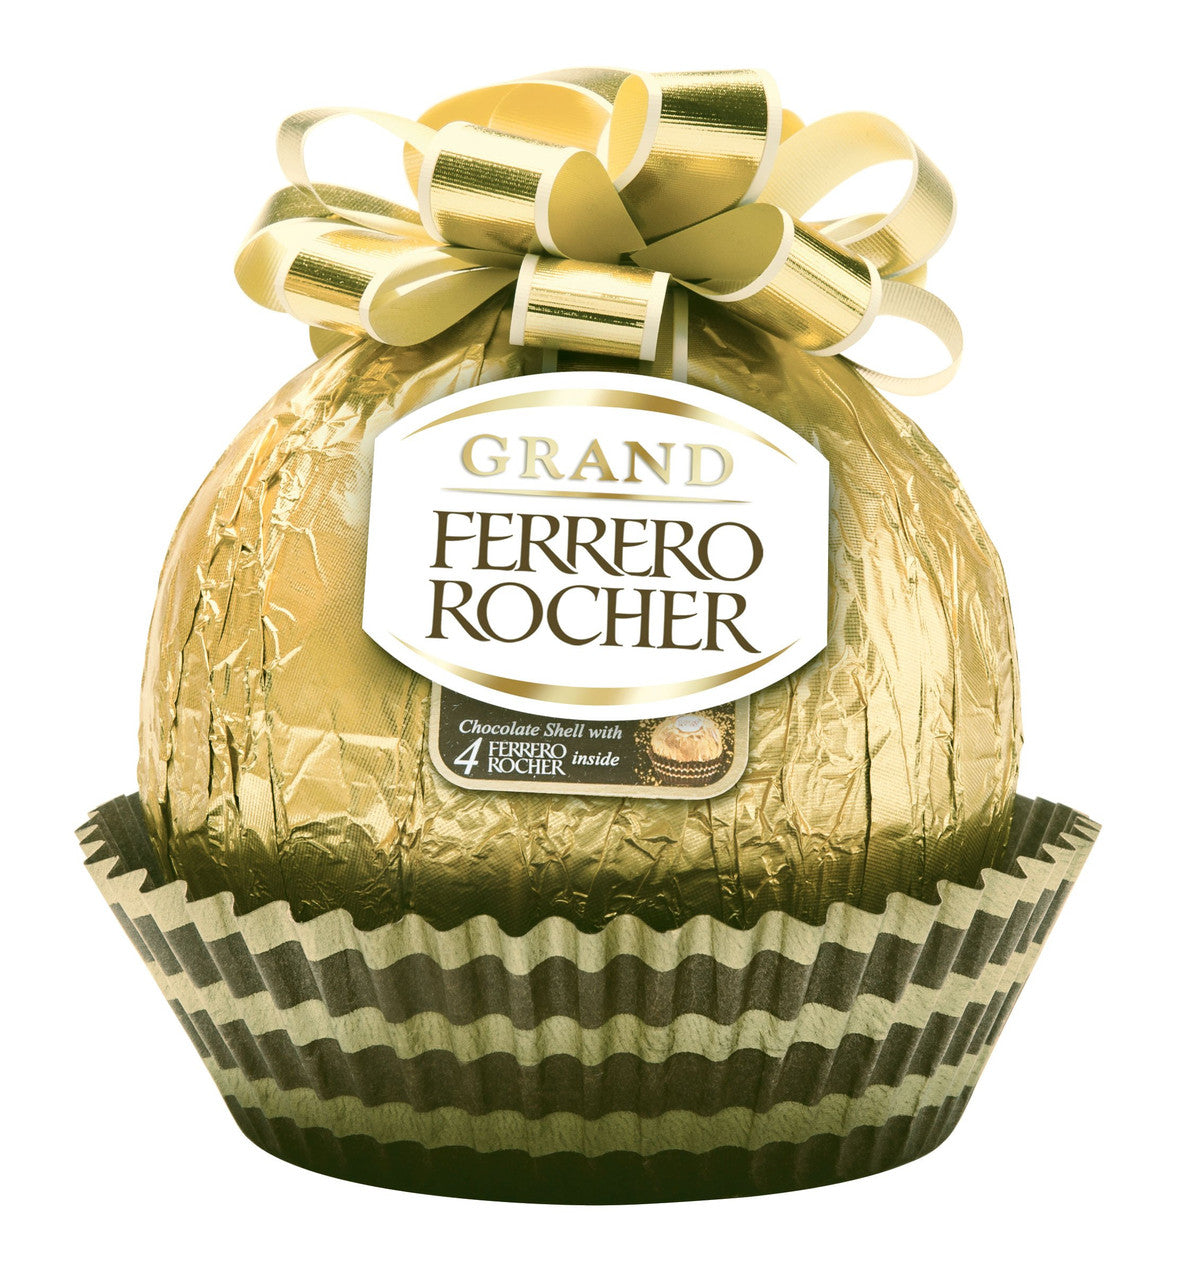 Ferrero Rocher Grand,  240g/8.5 oz., - {Imported from Canada}